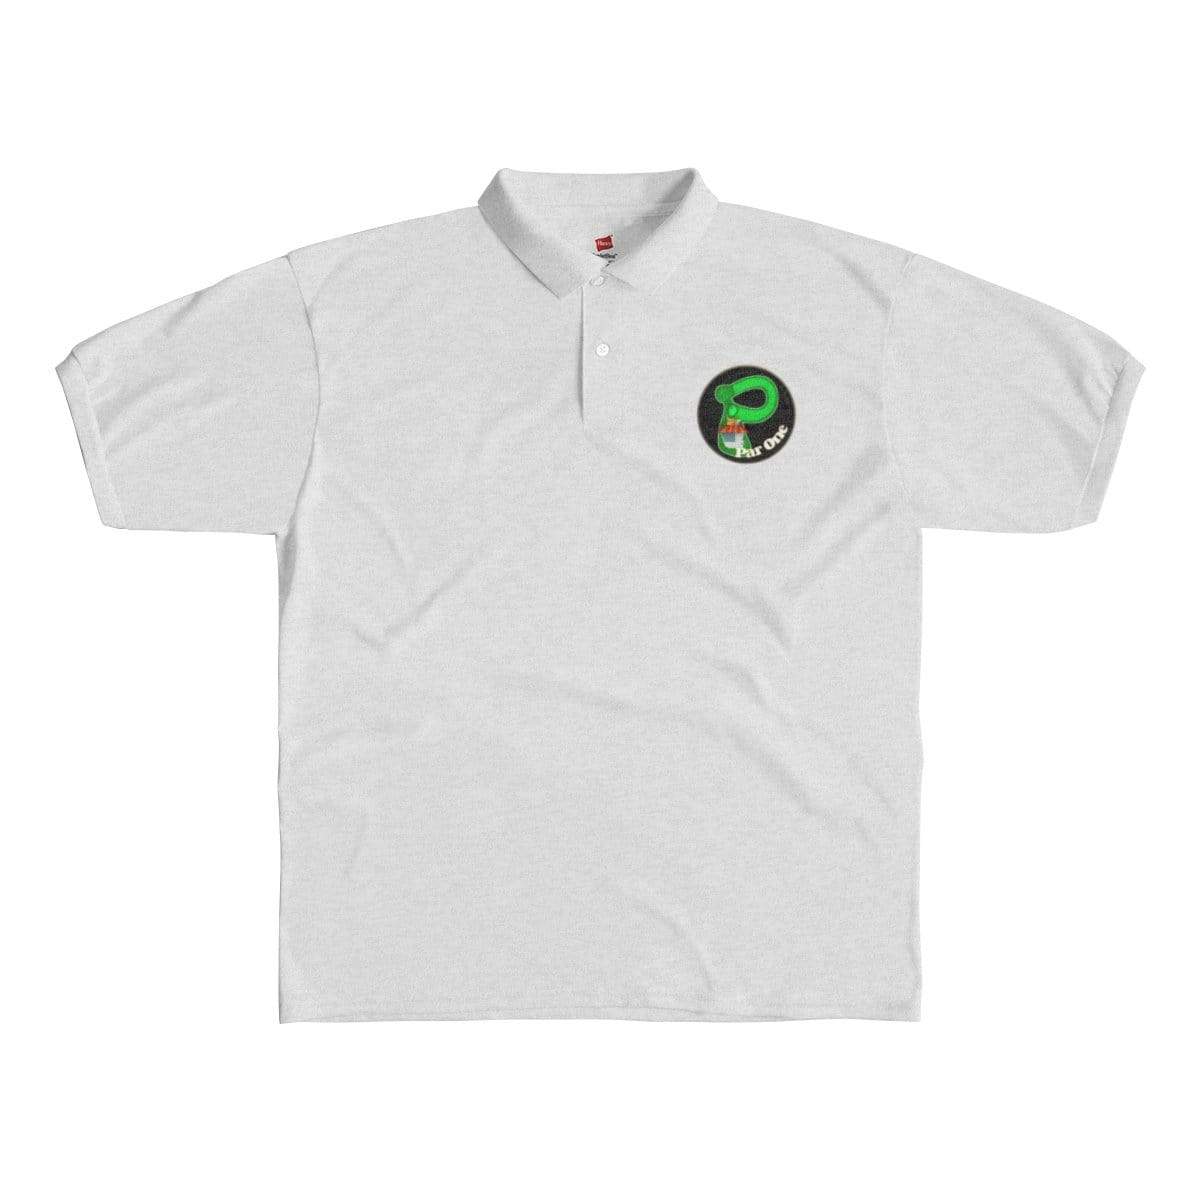 Plumskum T-Shirt S / Ash Plumskum Par One Golf Course Golf Shirt